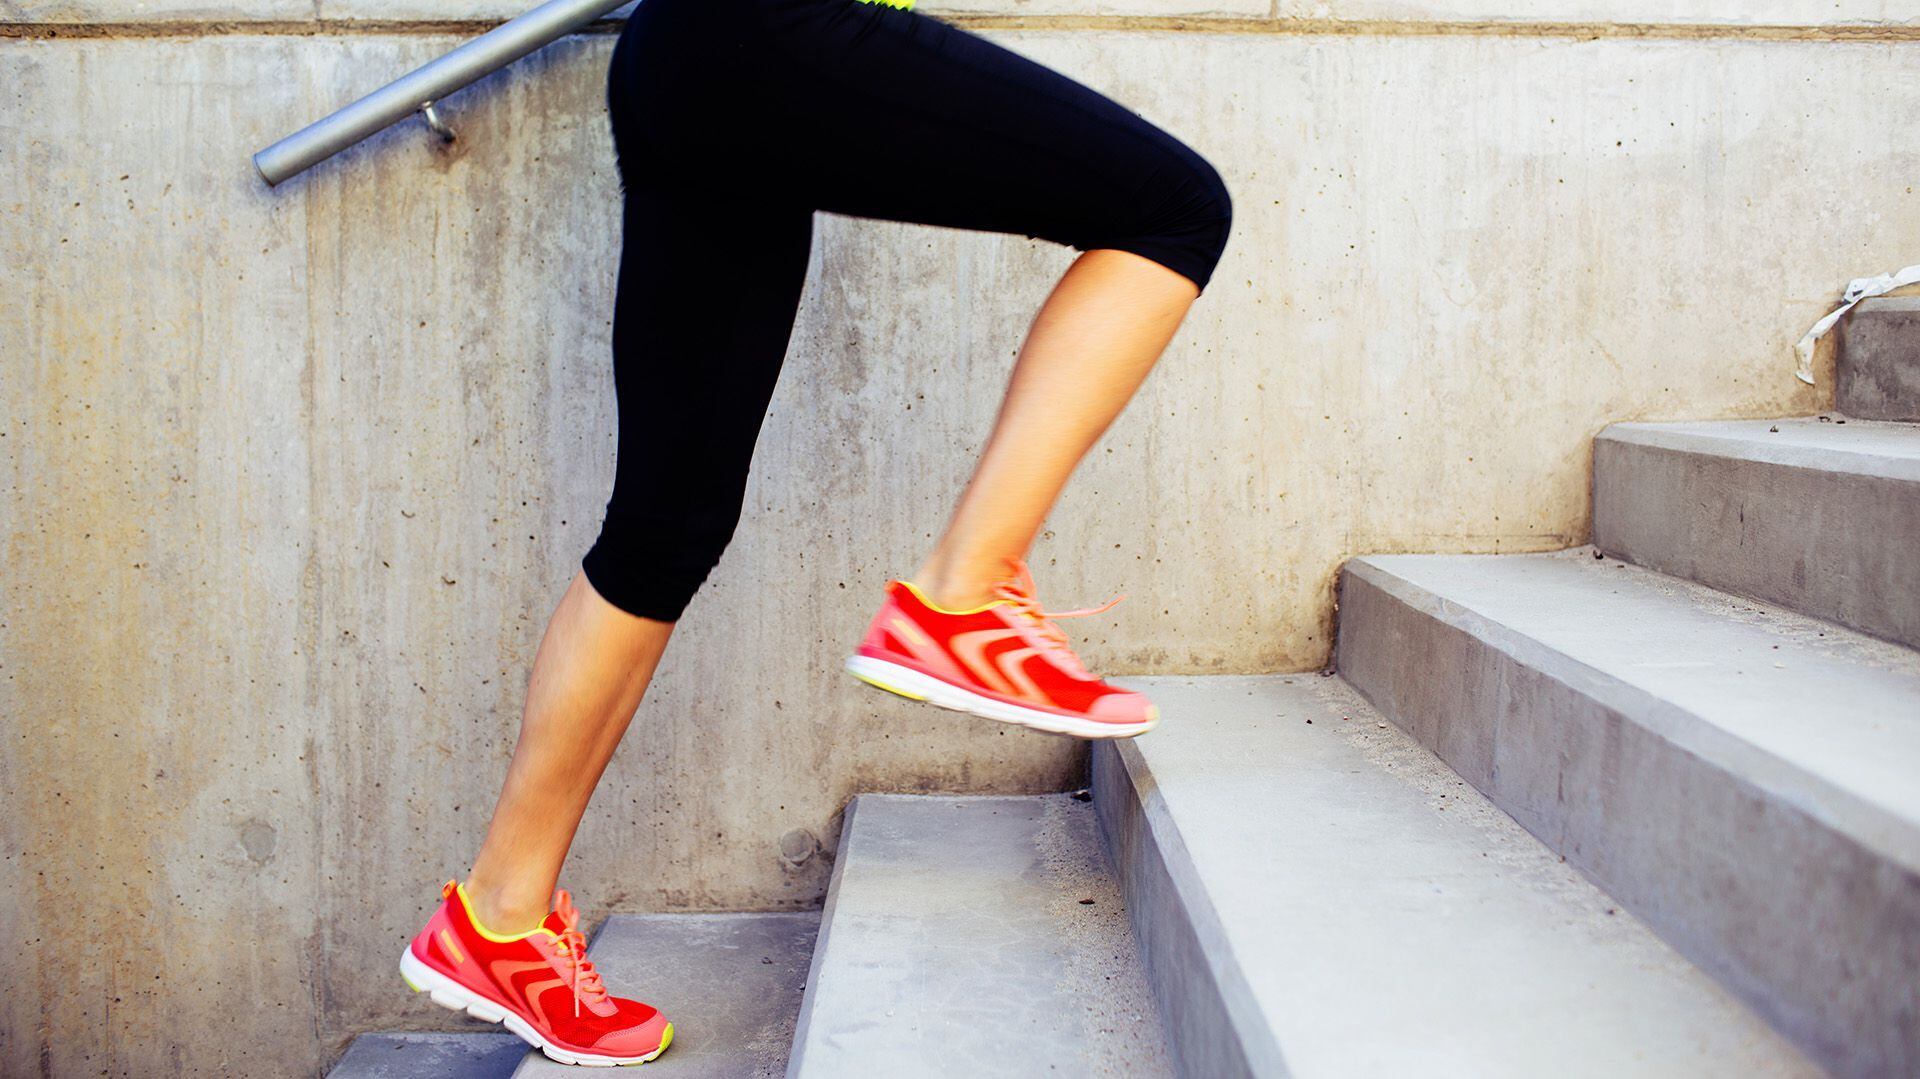 Subir más de cinco tramos de escaleras al día puede reducir el riesgo de enfermedad cardíaca en un 20%, según un estudio